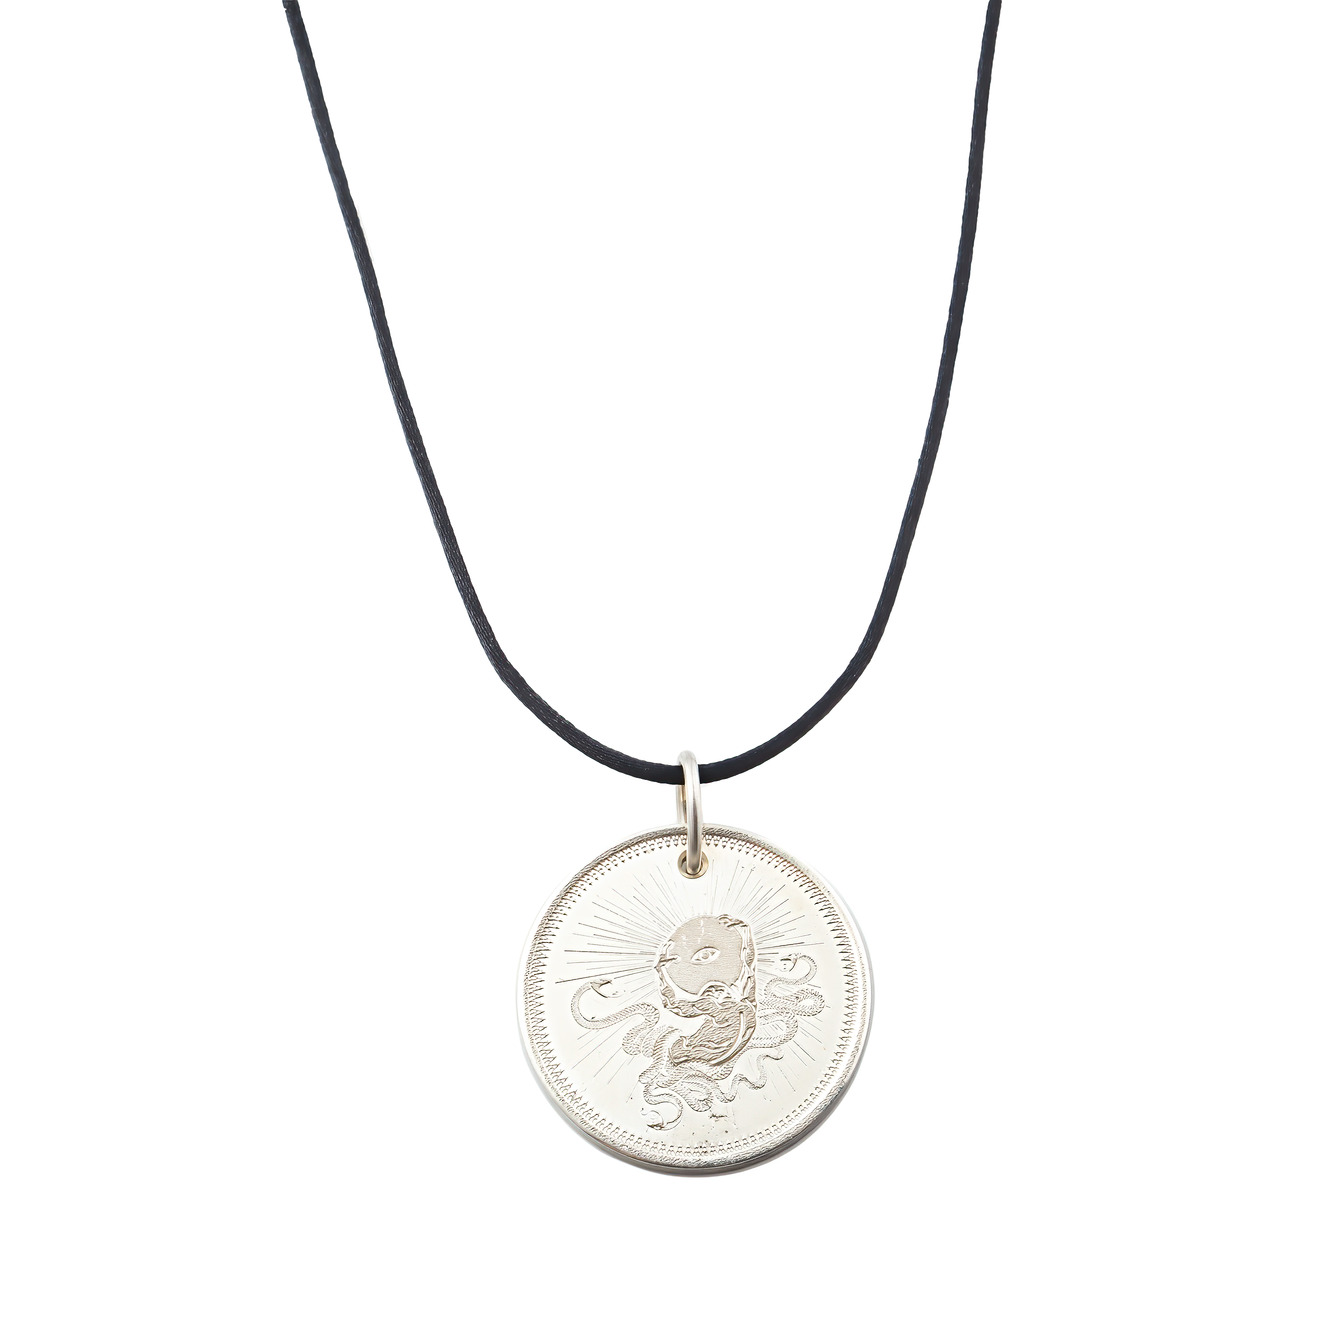 Agnes Waterhouse Подвеска-монета из серебра «Сила» маленькая сувенирная монета из сша с посеребренным покрытием в виде черепа каратель зла памятная монета монета